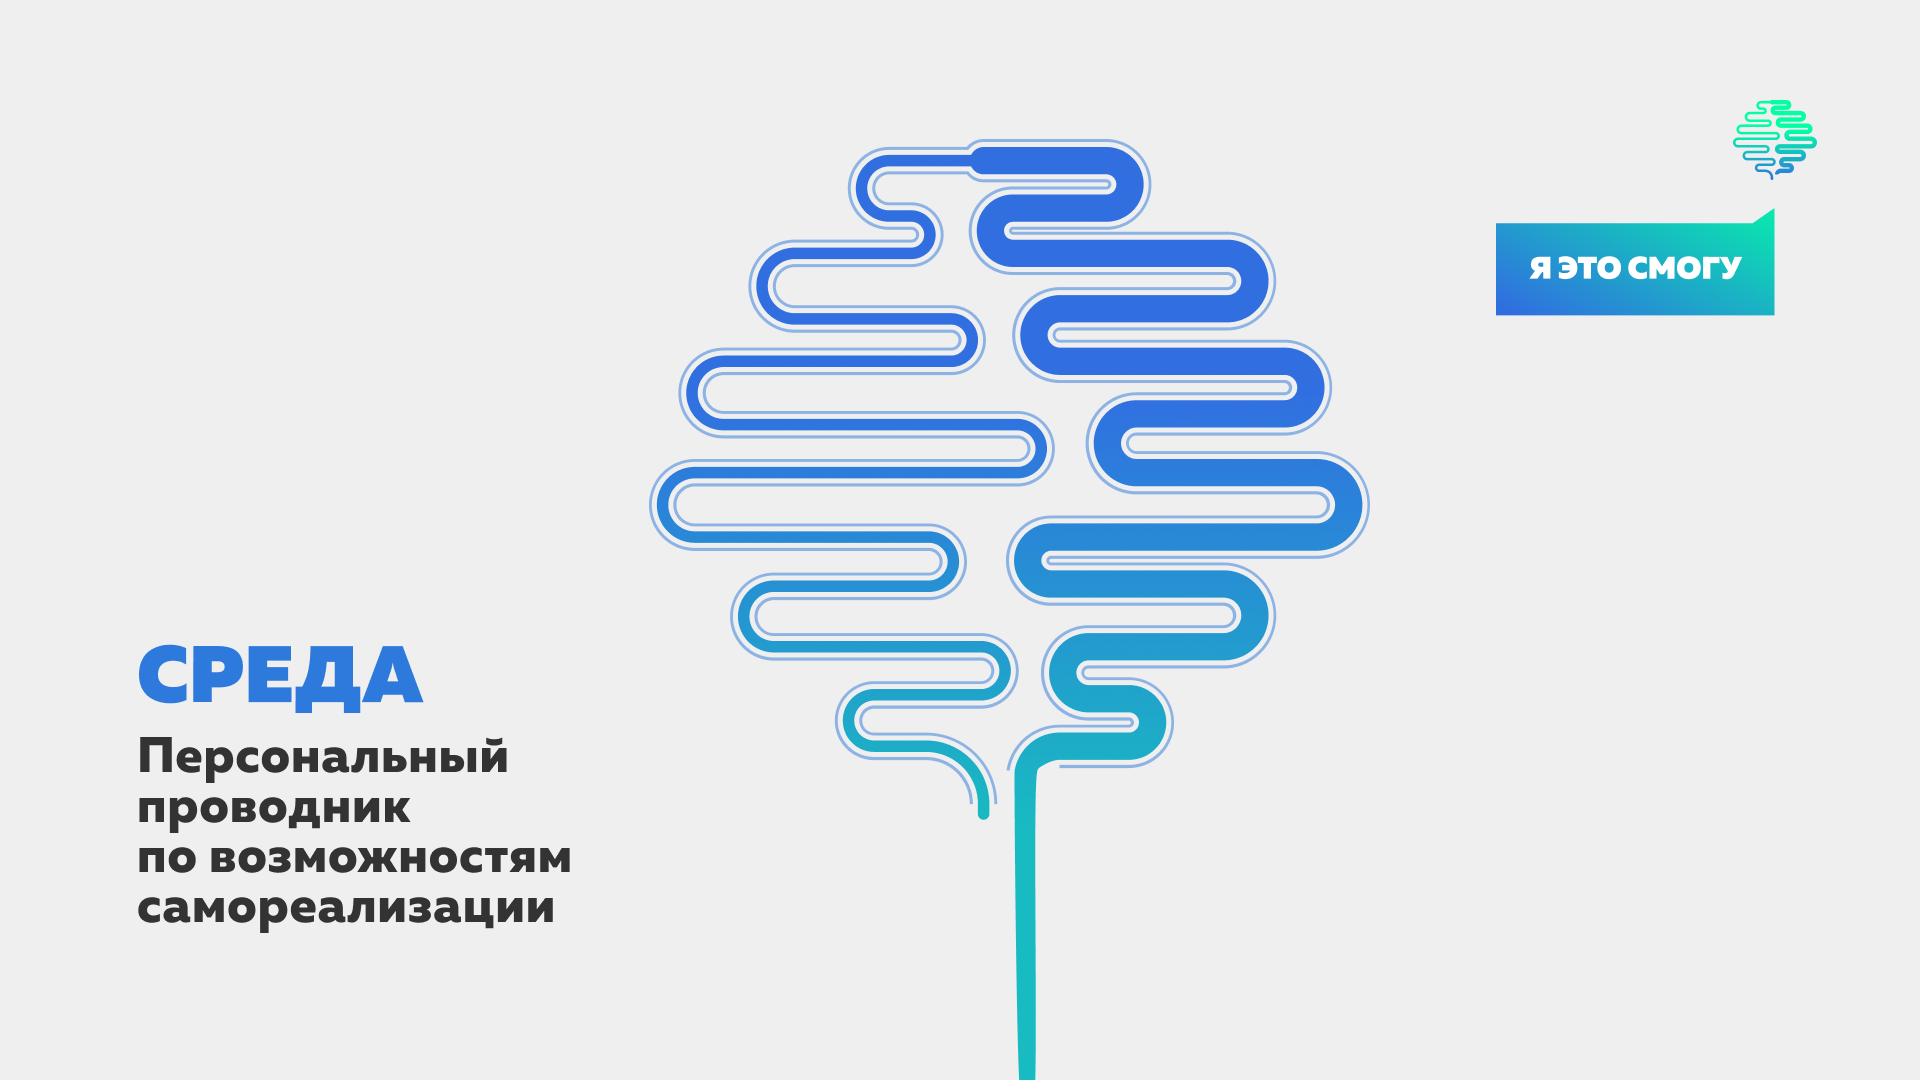 Персональный проводник для студентов России «Среда»: новый этап цифровизации Росмолодежи